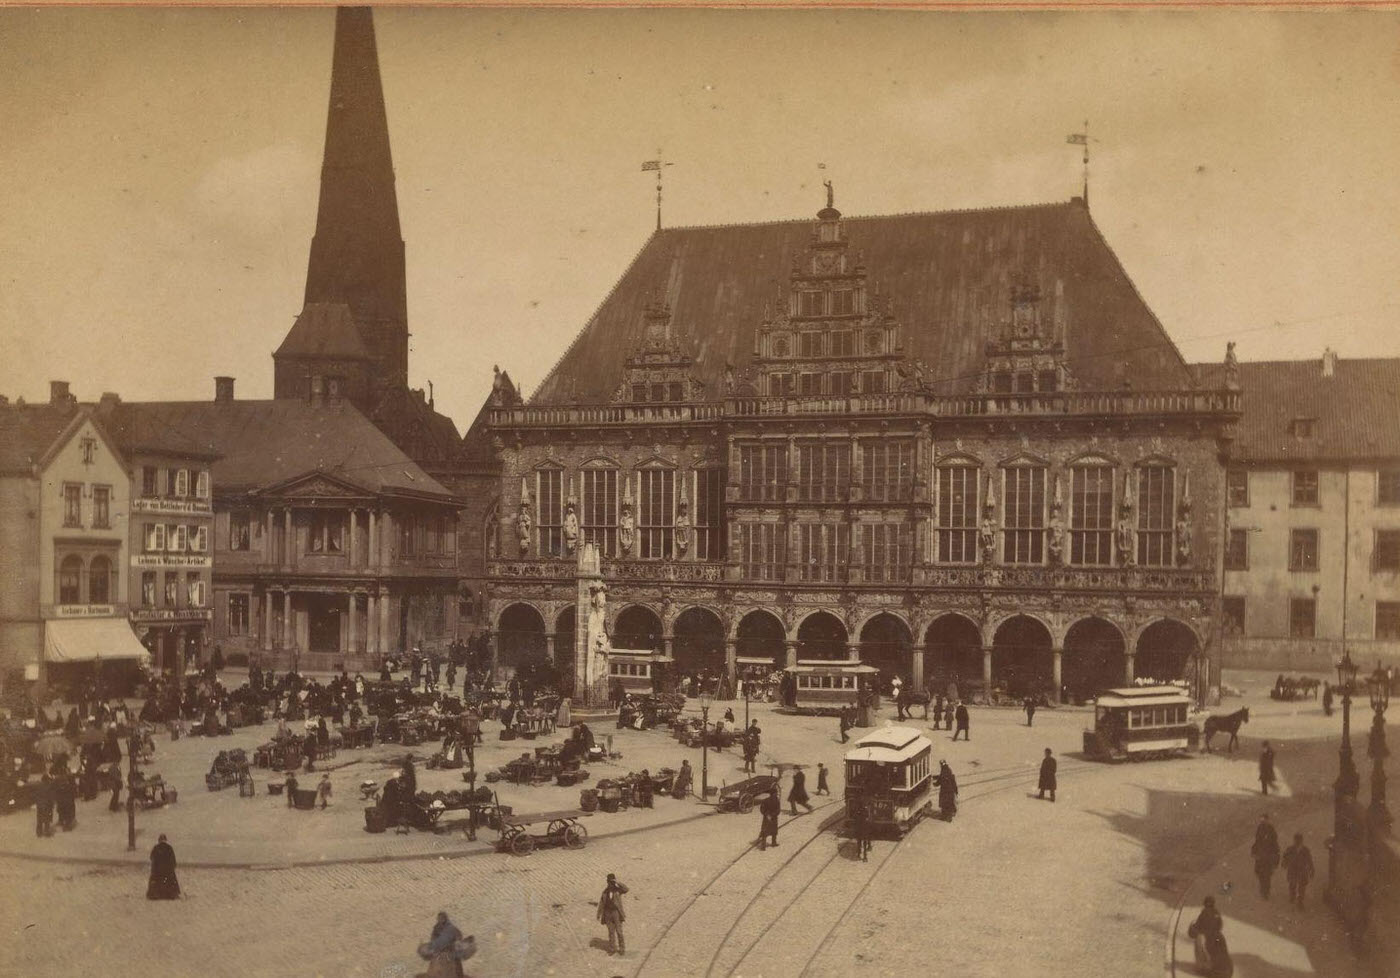 View of Bremer Marktplatz with town hall, Bremen Town Hall, Bremen, 1900.